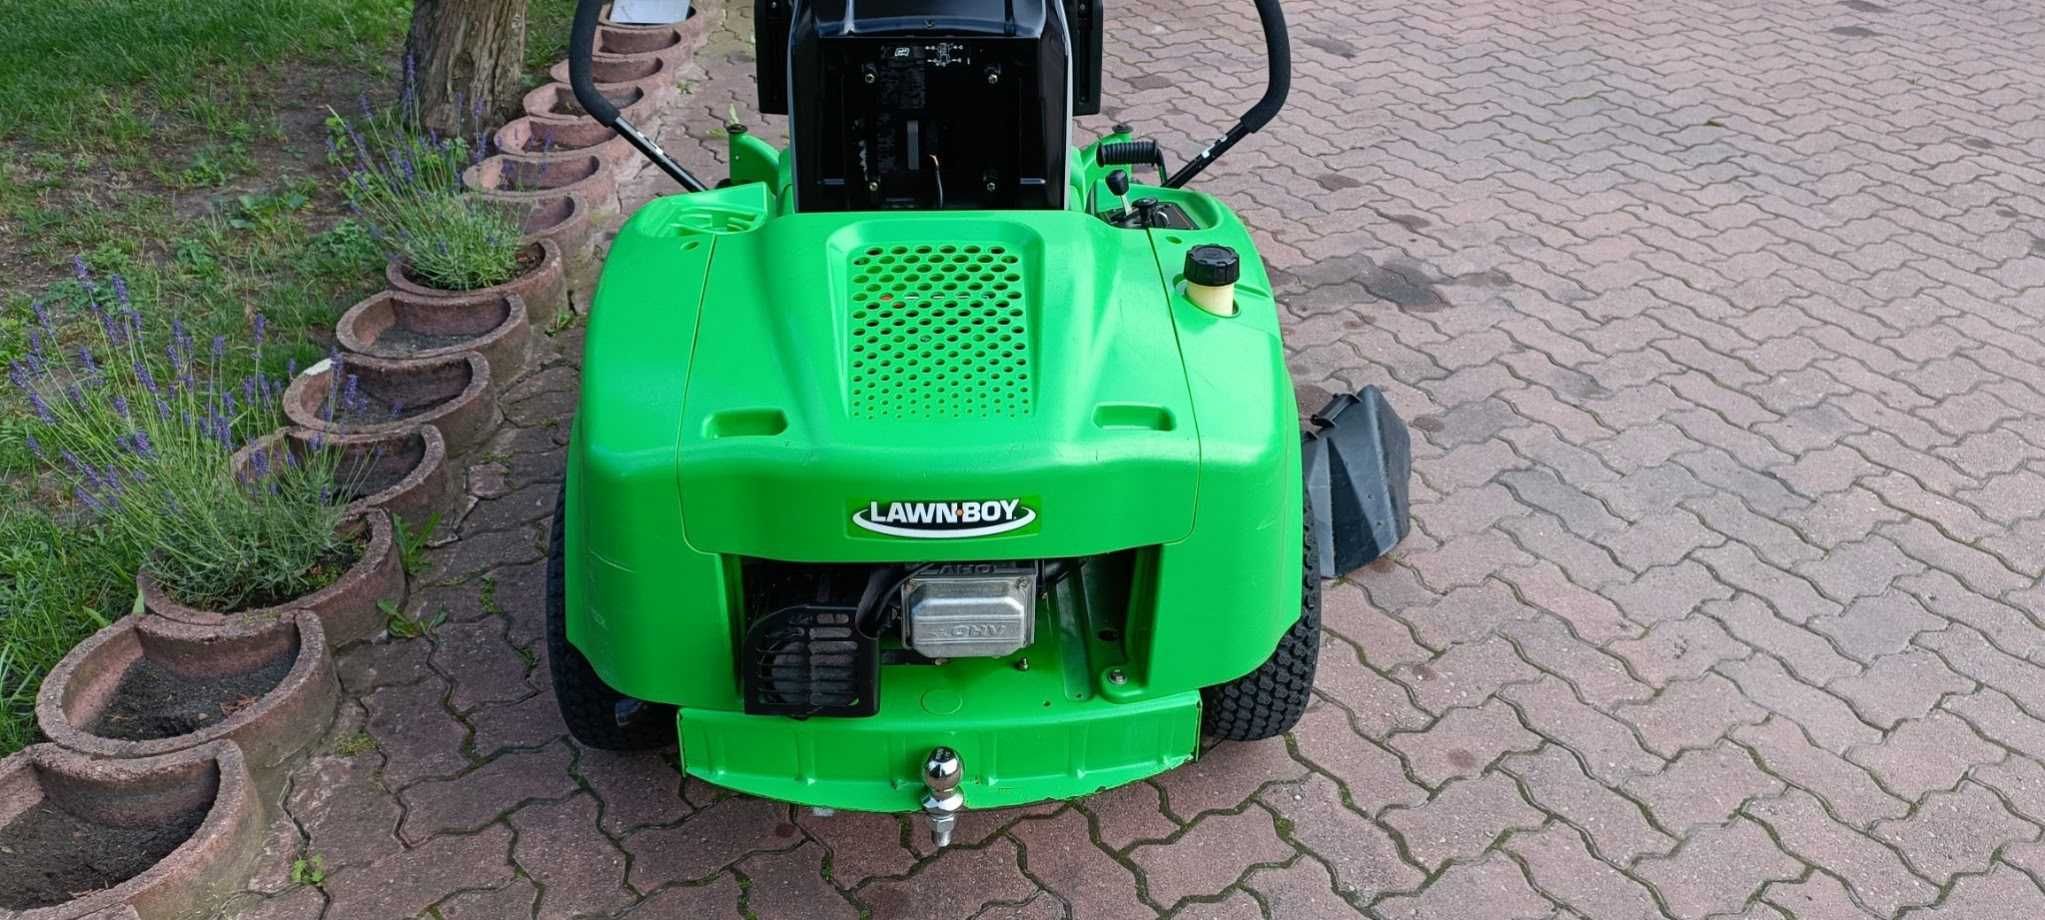 LawnBoy Toro traktorek kosiarka Rider 16KM mulczer boczny wyrzut